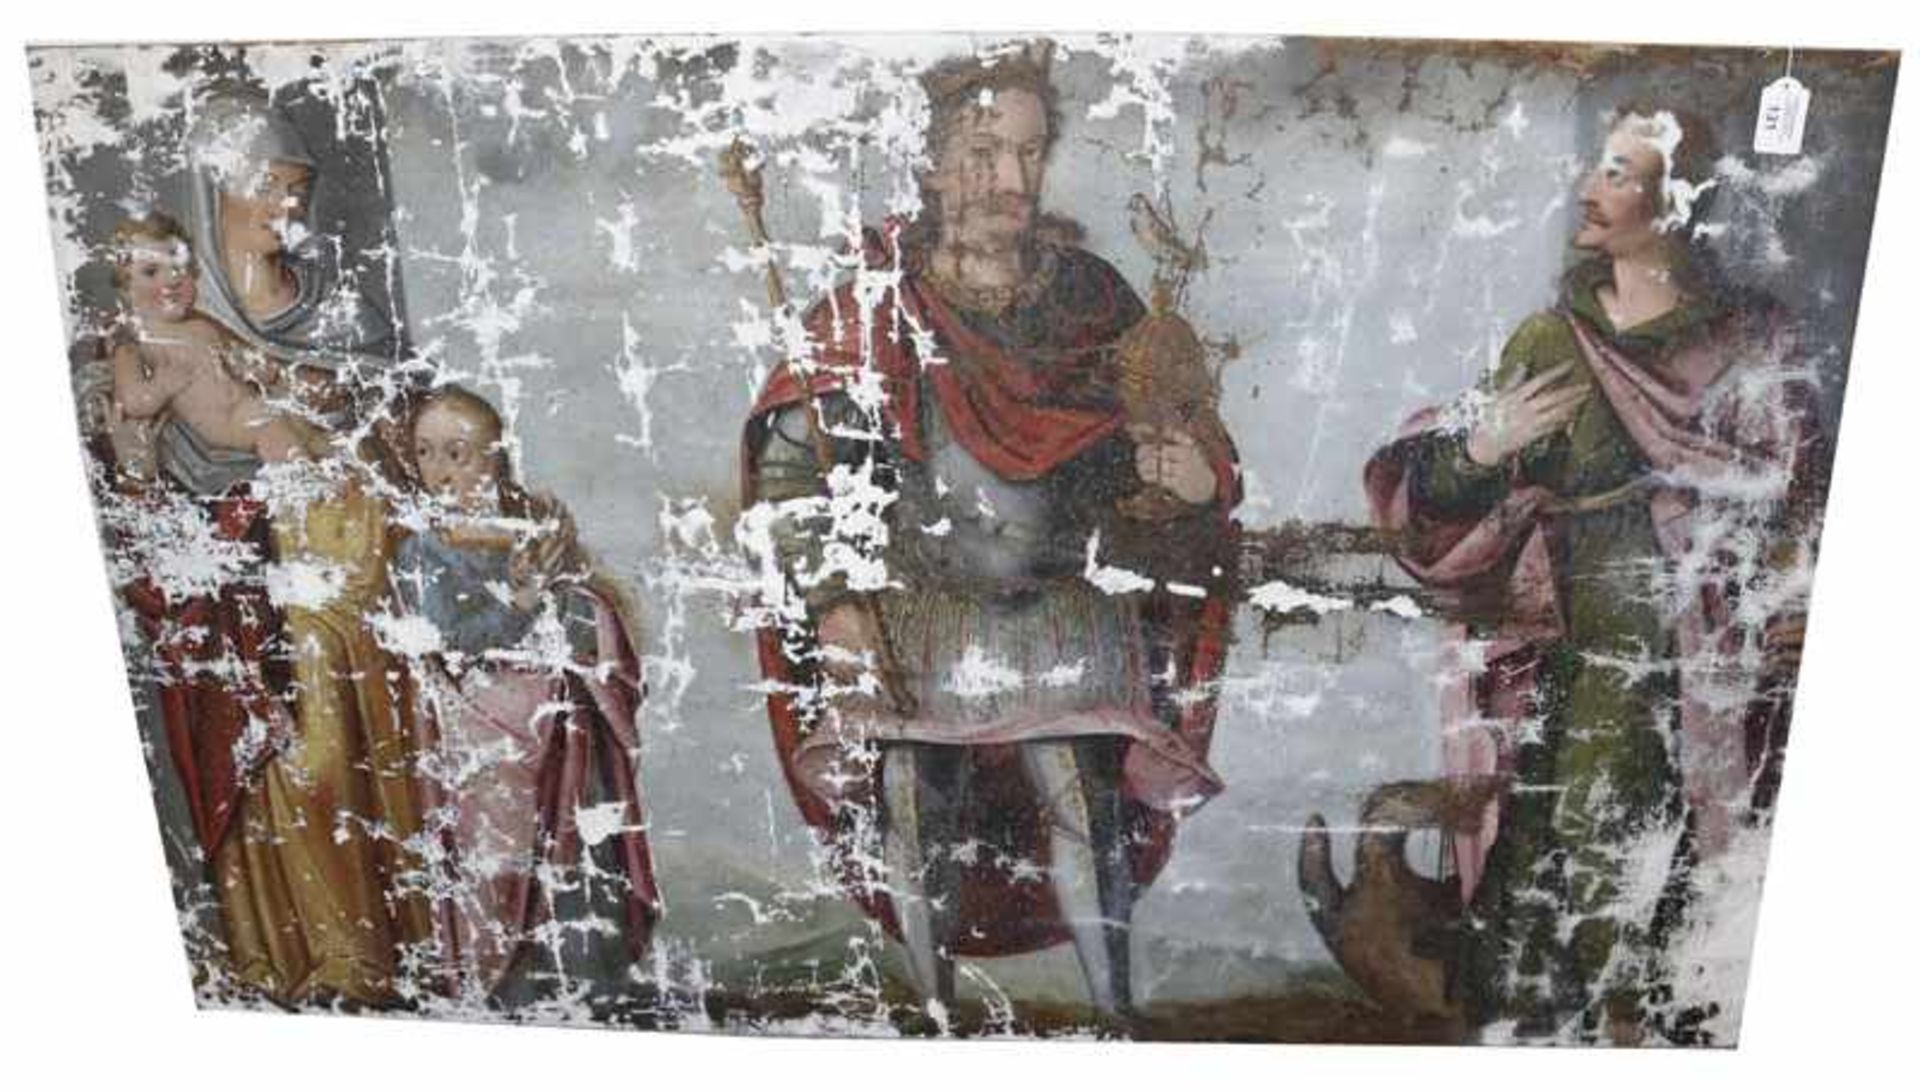 Gemälde vermutlich um 1550, 'Kaiser mit Anna Selbdritt und Hl. Johannes mit Adler', (nach Auskunft